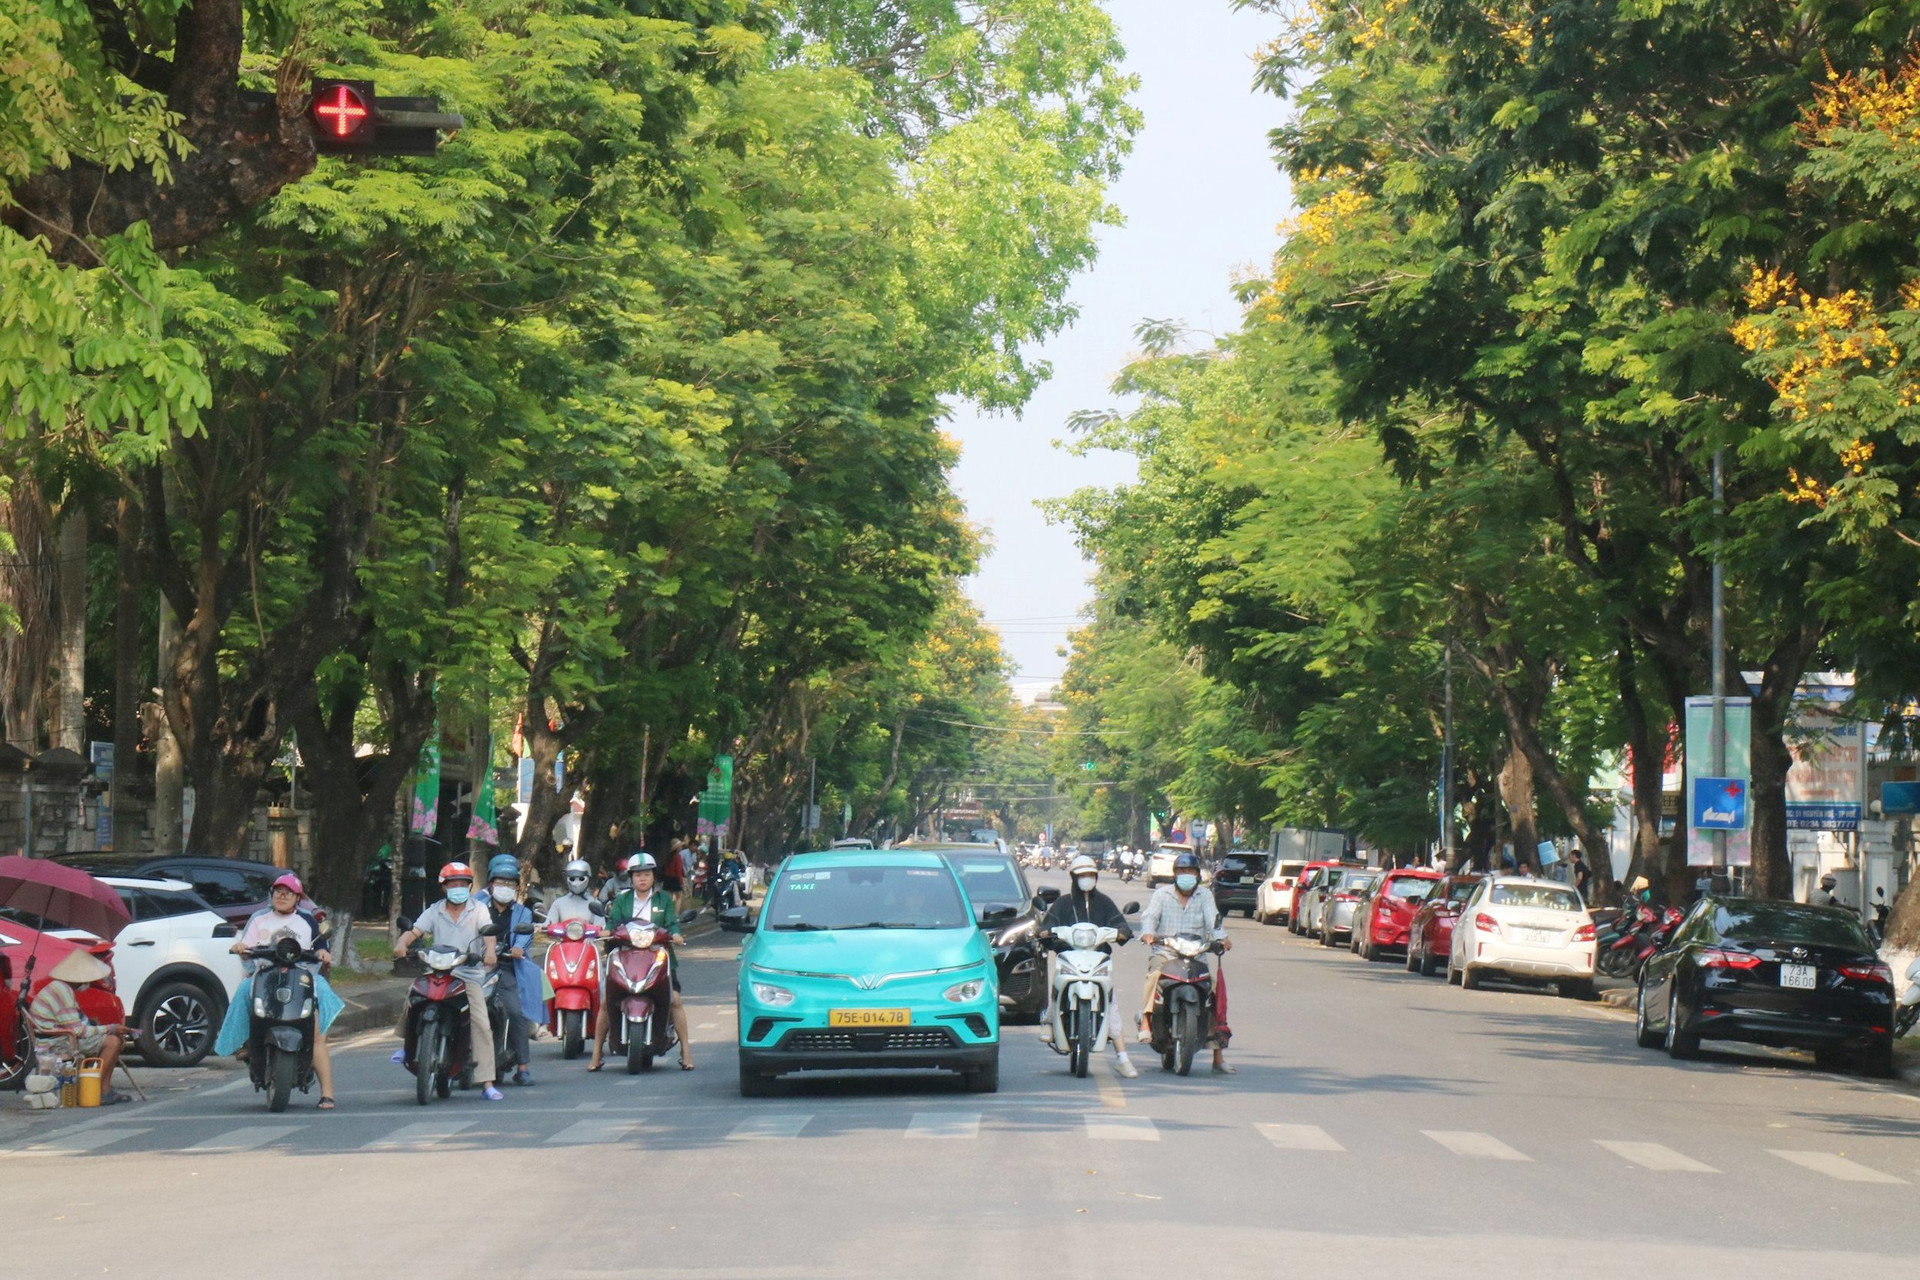 Những ngày này, khắp các tuyến đường trung tâm thành phố Huế như Nguyễn Huệ, Ngô Quyền, Trần Hưng Đạo, Lê Huân... những cây hoa điệp vàng đua nở, tạo nên một không gian rực rỡ đầy sắc màu.